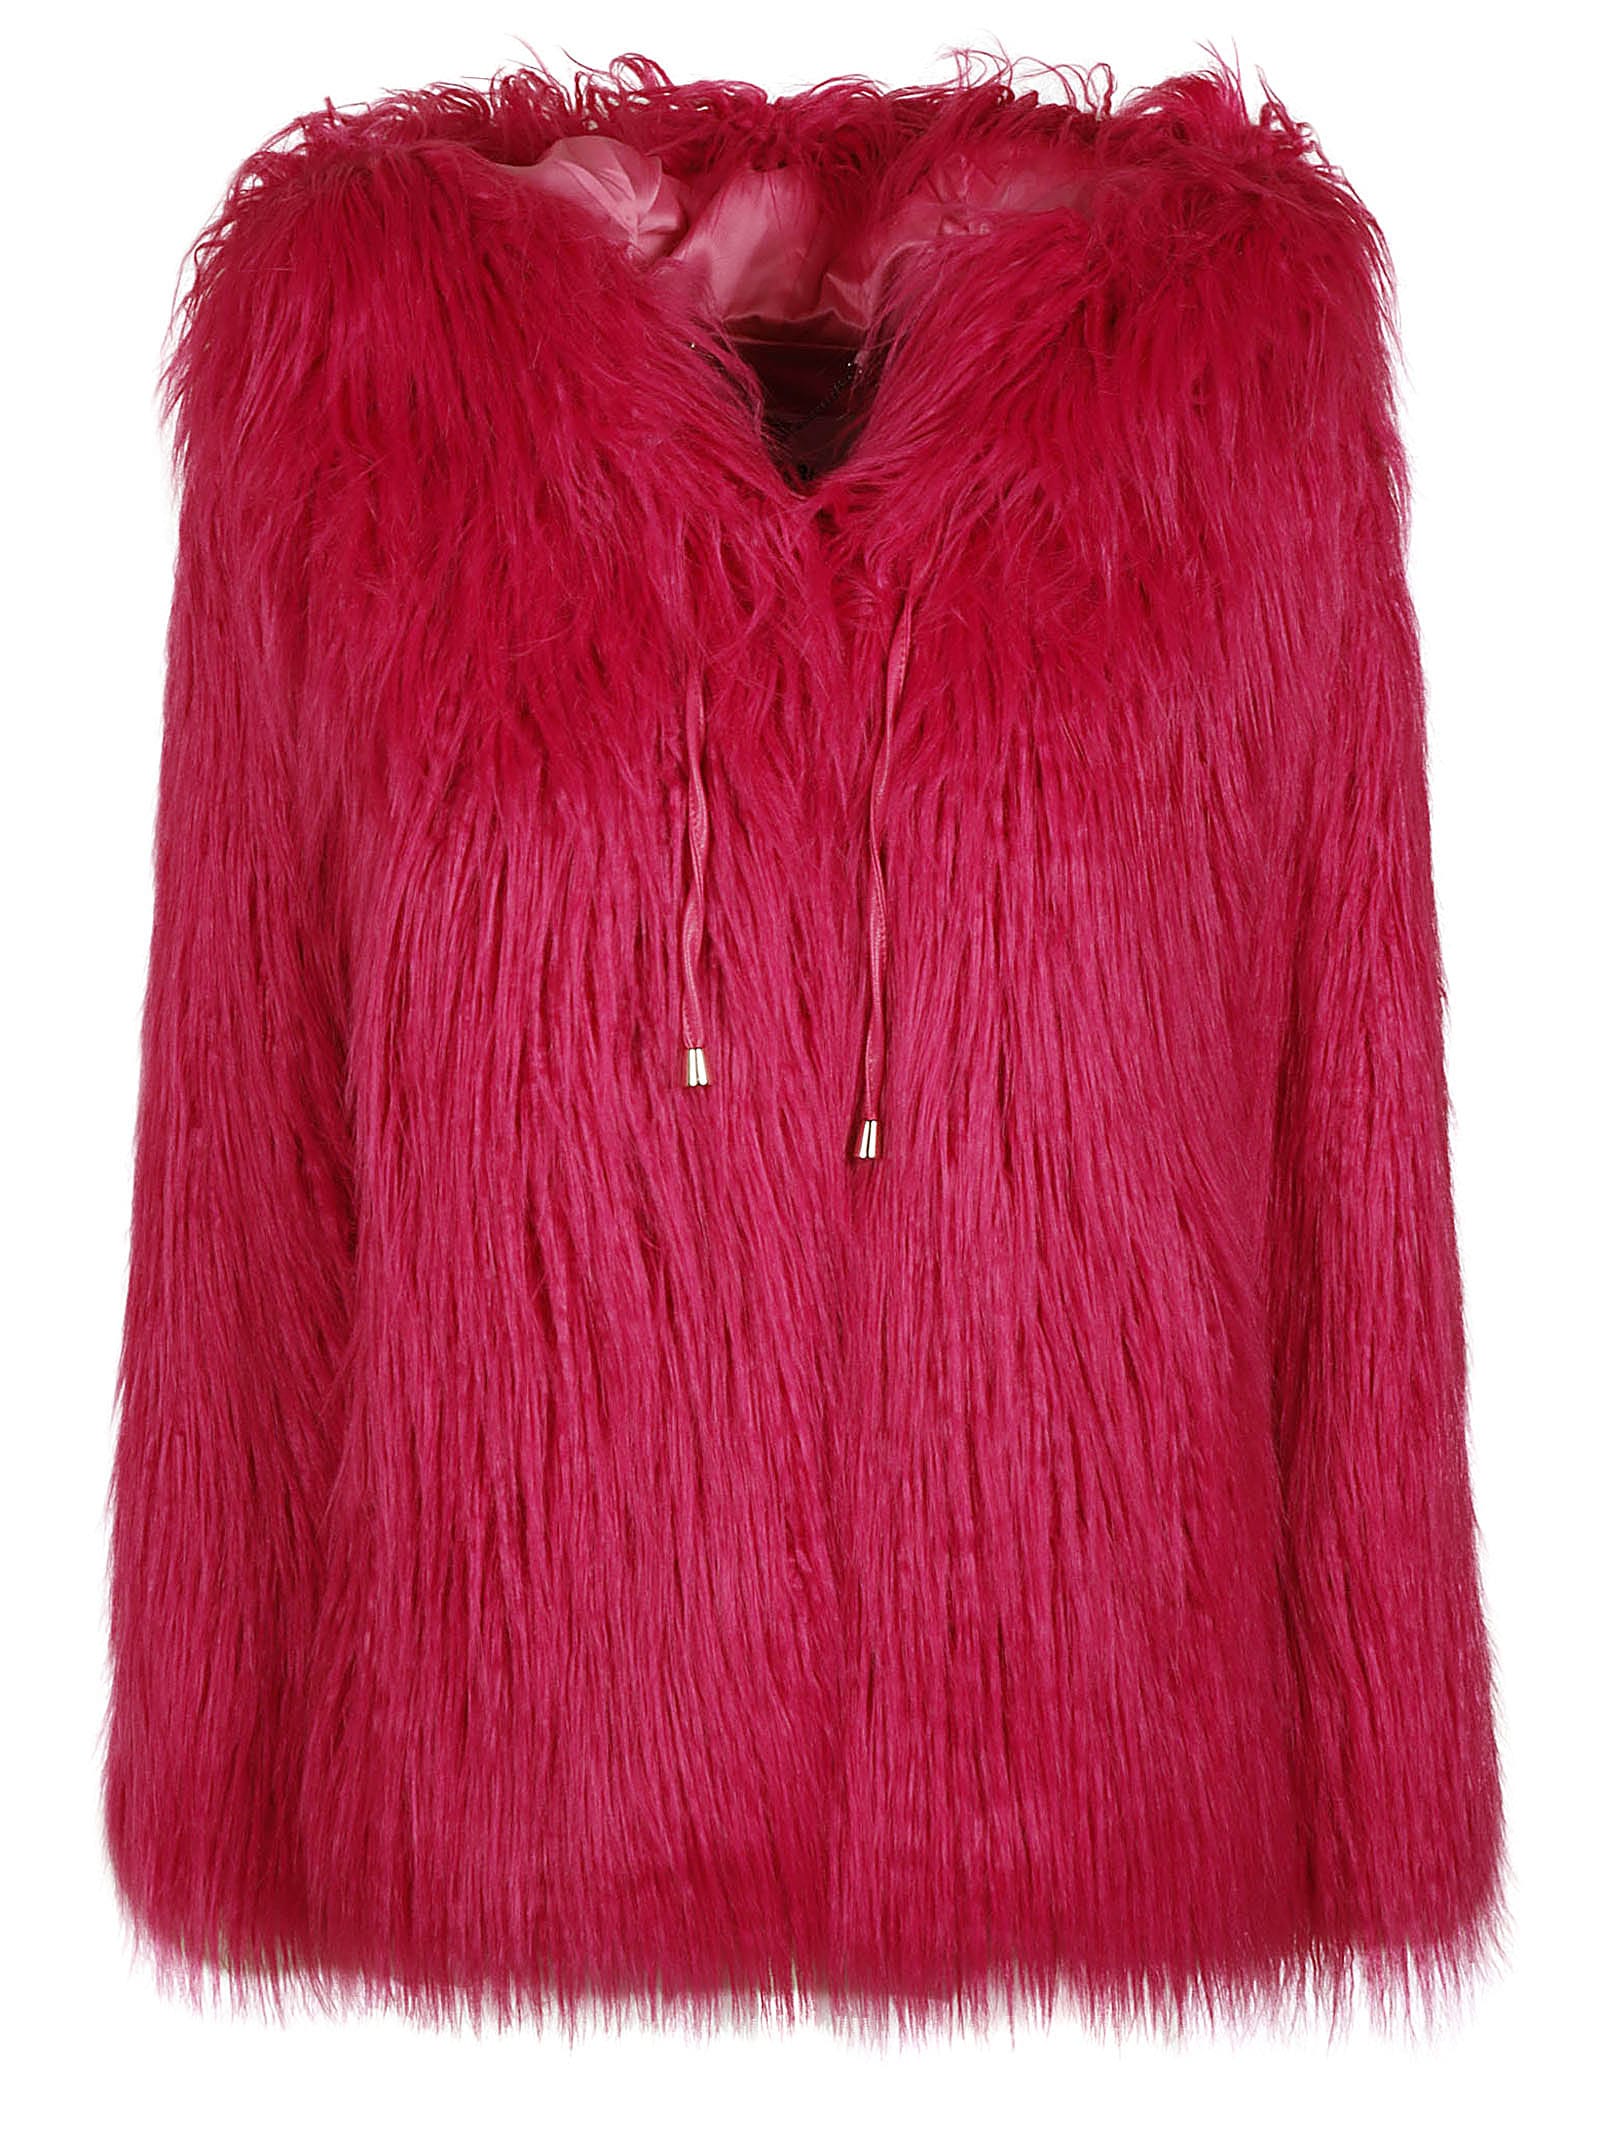 All-over Fur Hooded Jacket Blugirl